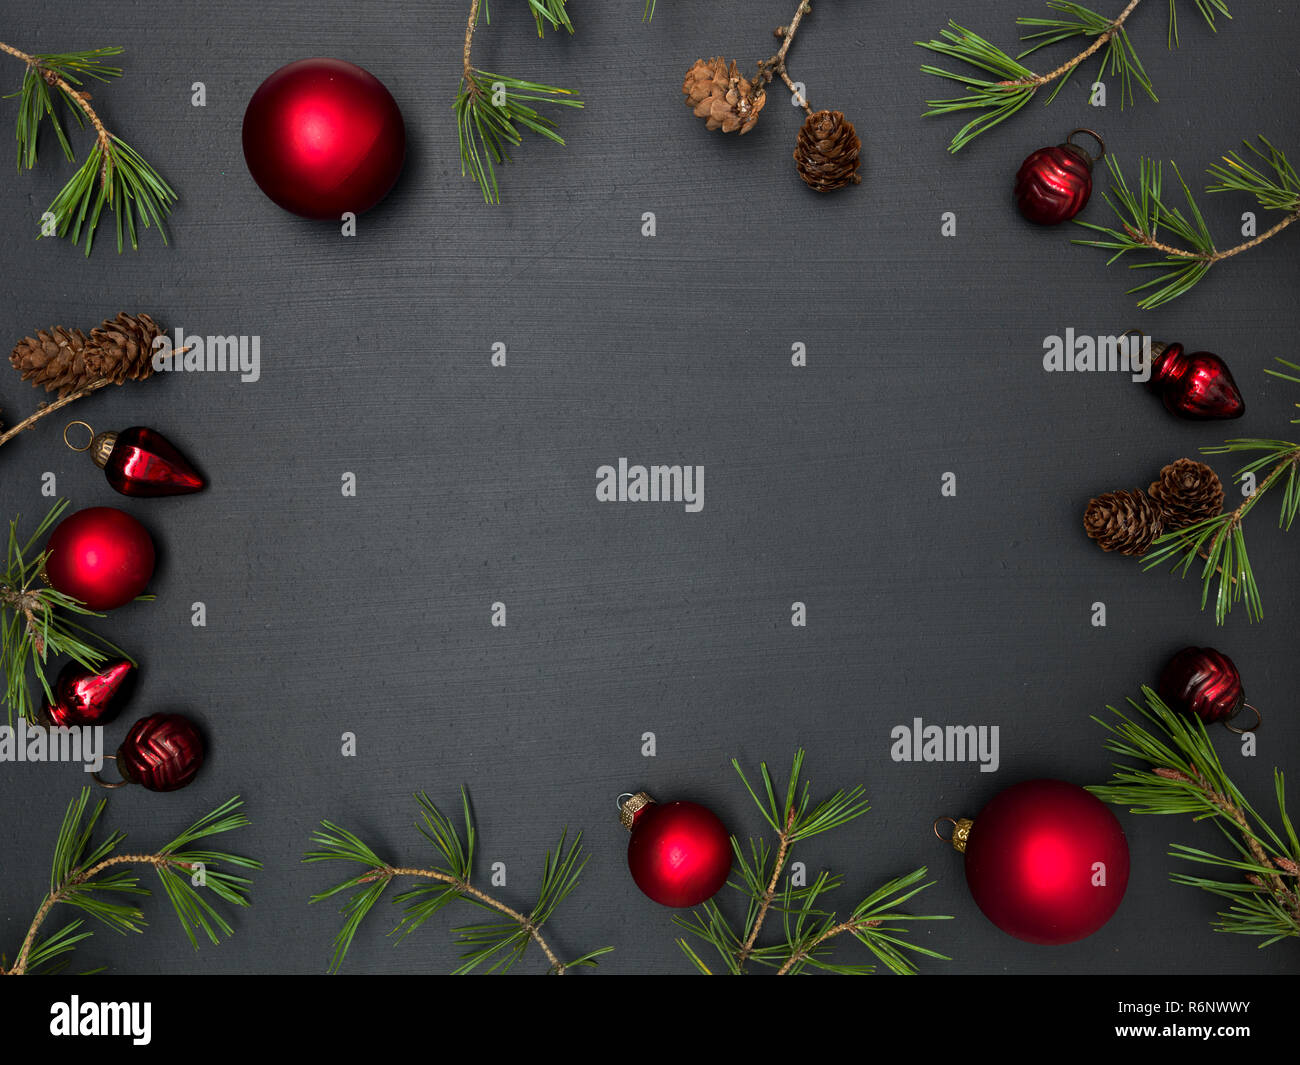 Fond de Noël avec des articles de Noël rouge sur tableau noir Banque D'Images